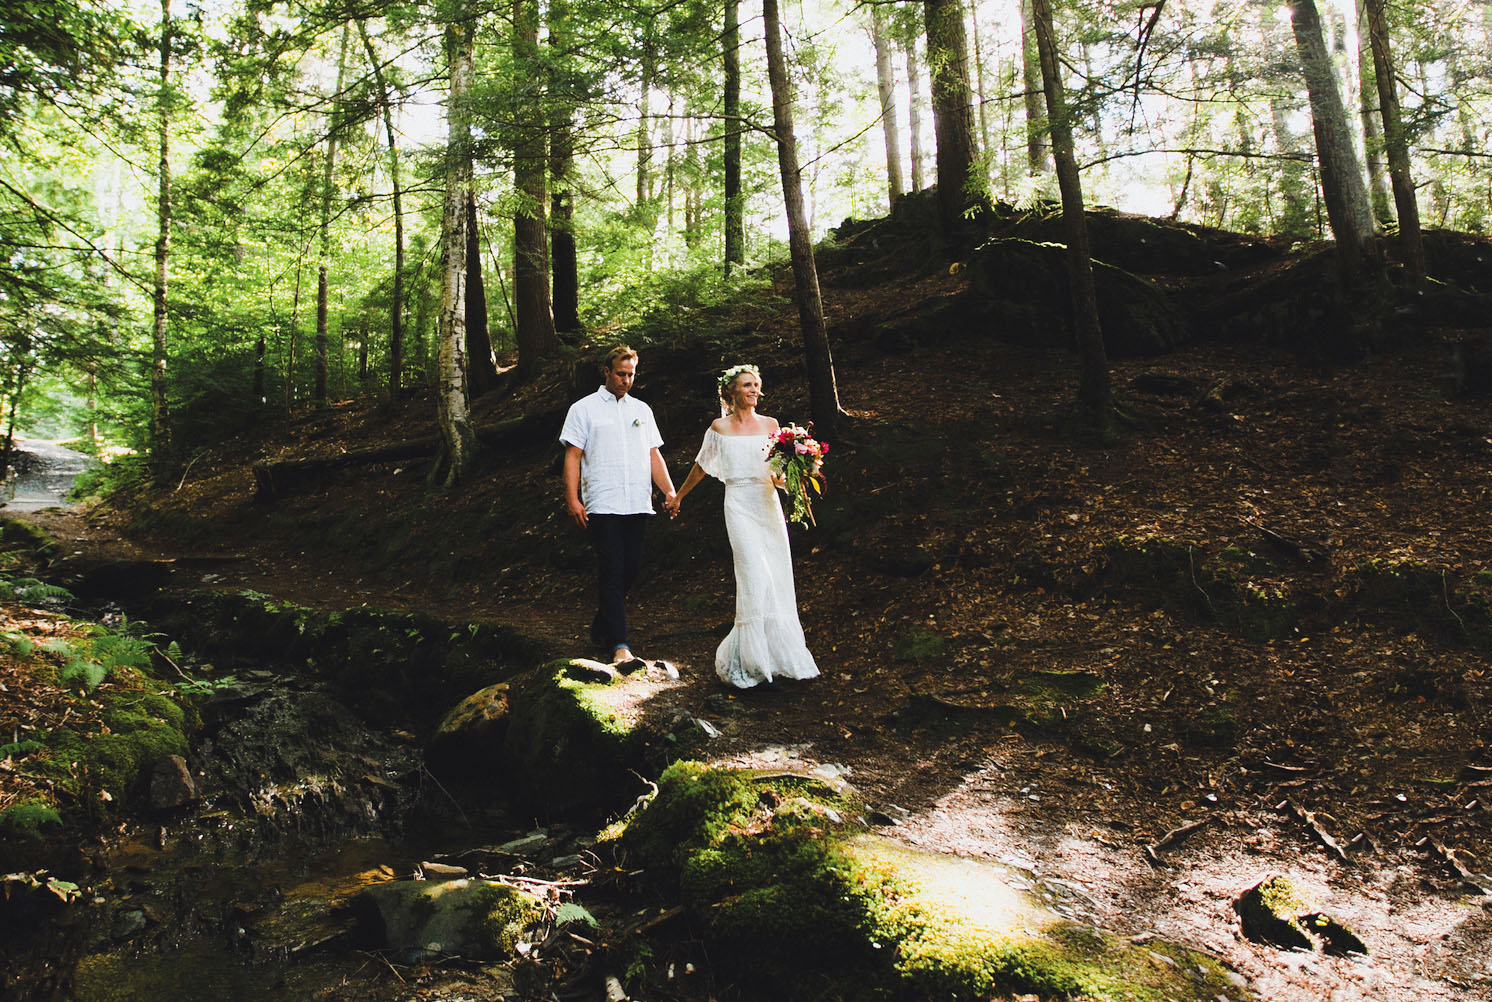 Kristen Getler and Nick Laskovski's wedding in Roxbury, Vermont.